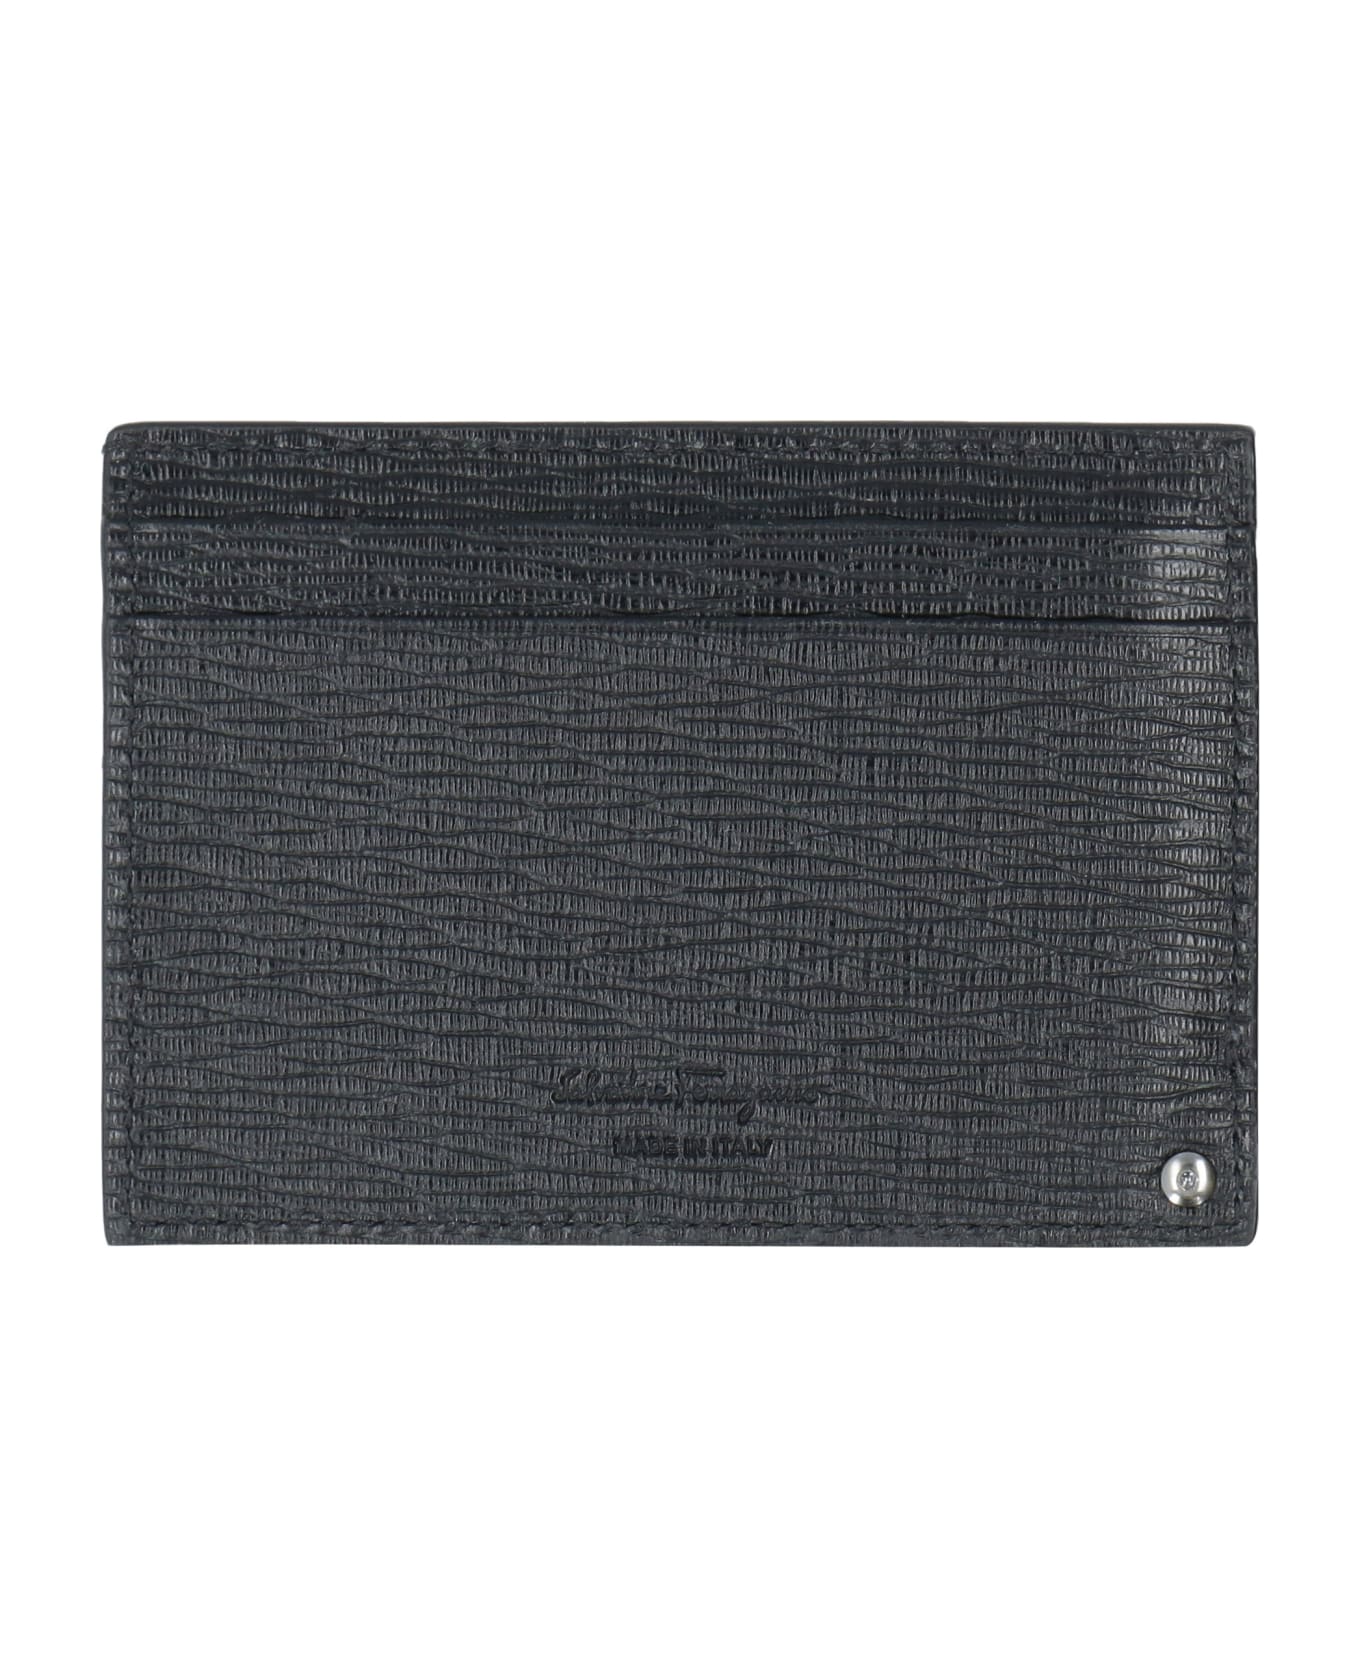 Ferragamo Gancini Leather Card Holder - black